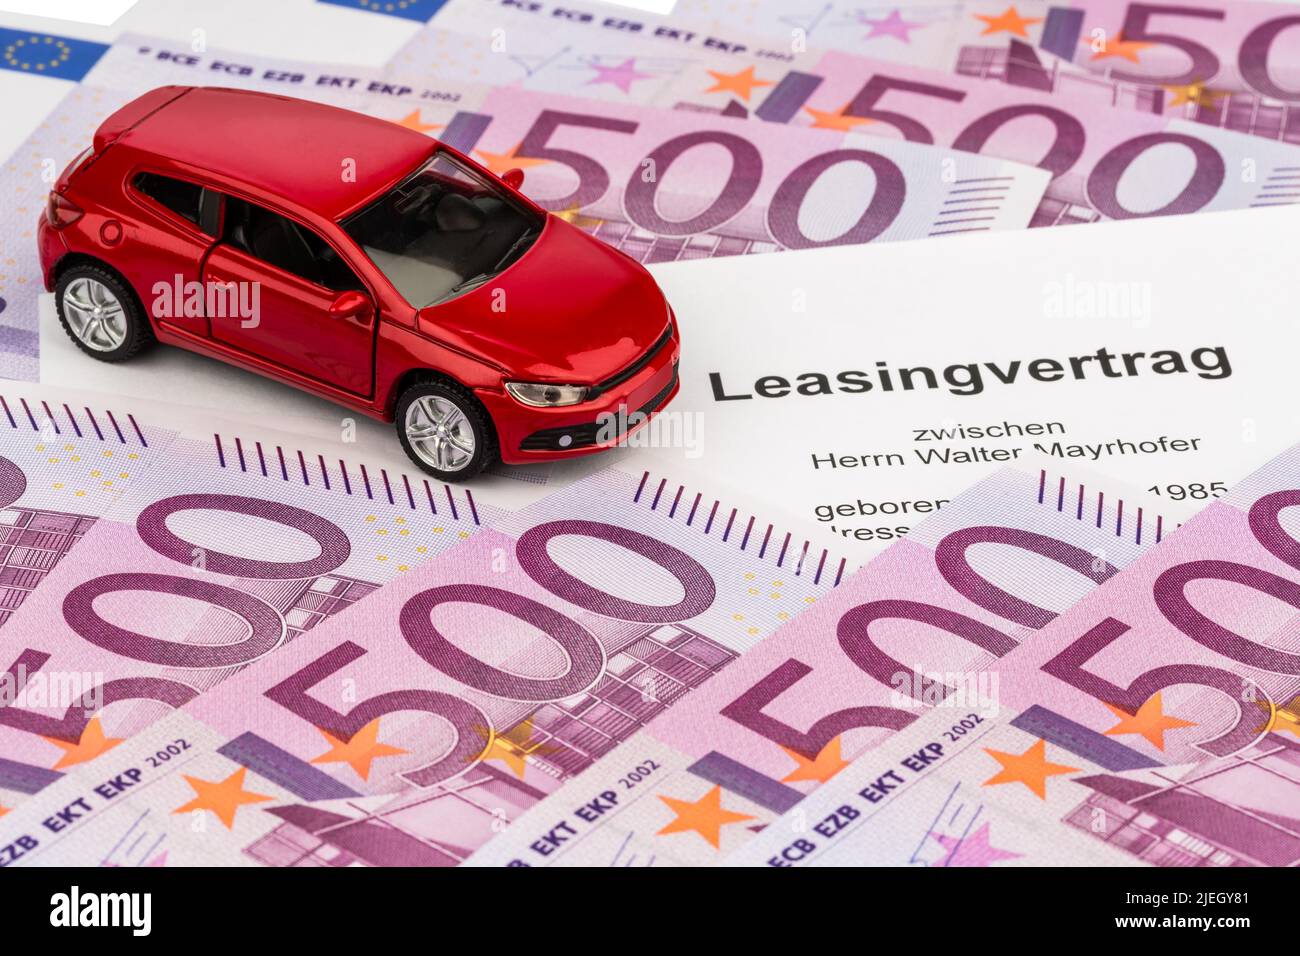 Ein Leasingvertrag, (Autoleasing),  für ein neues Auto beim Autohändler, Kfz, PKW, Stock Photo